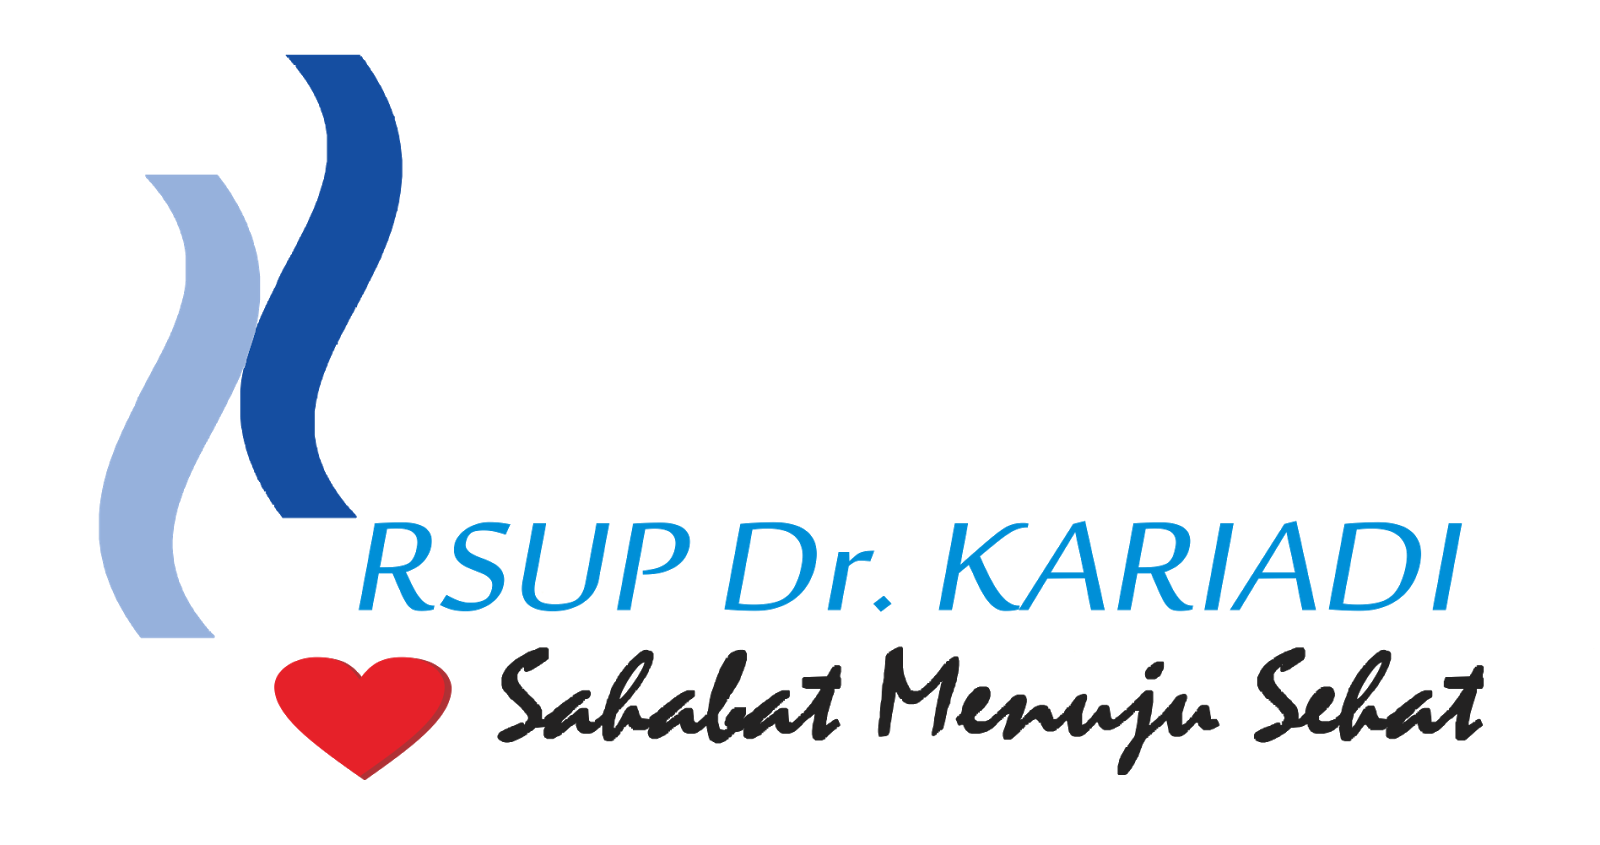 Hasil gambar untuk rsup kariadi logo